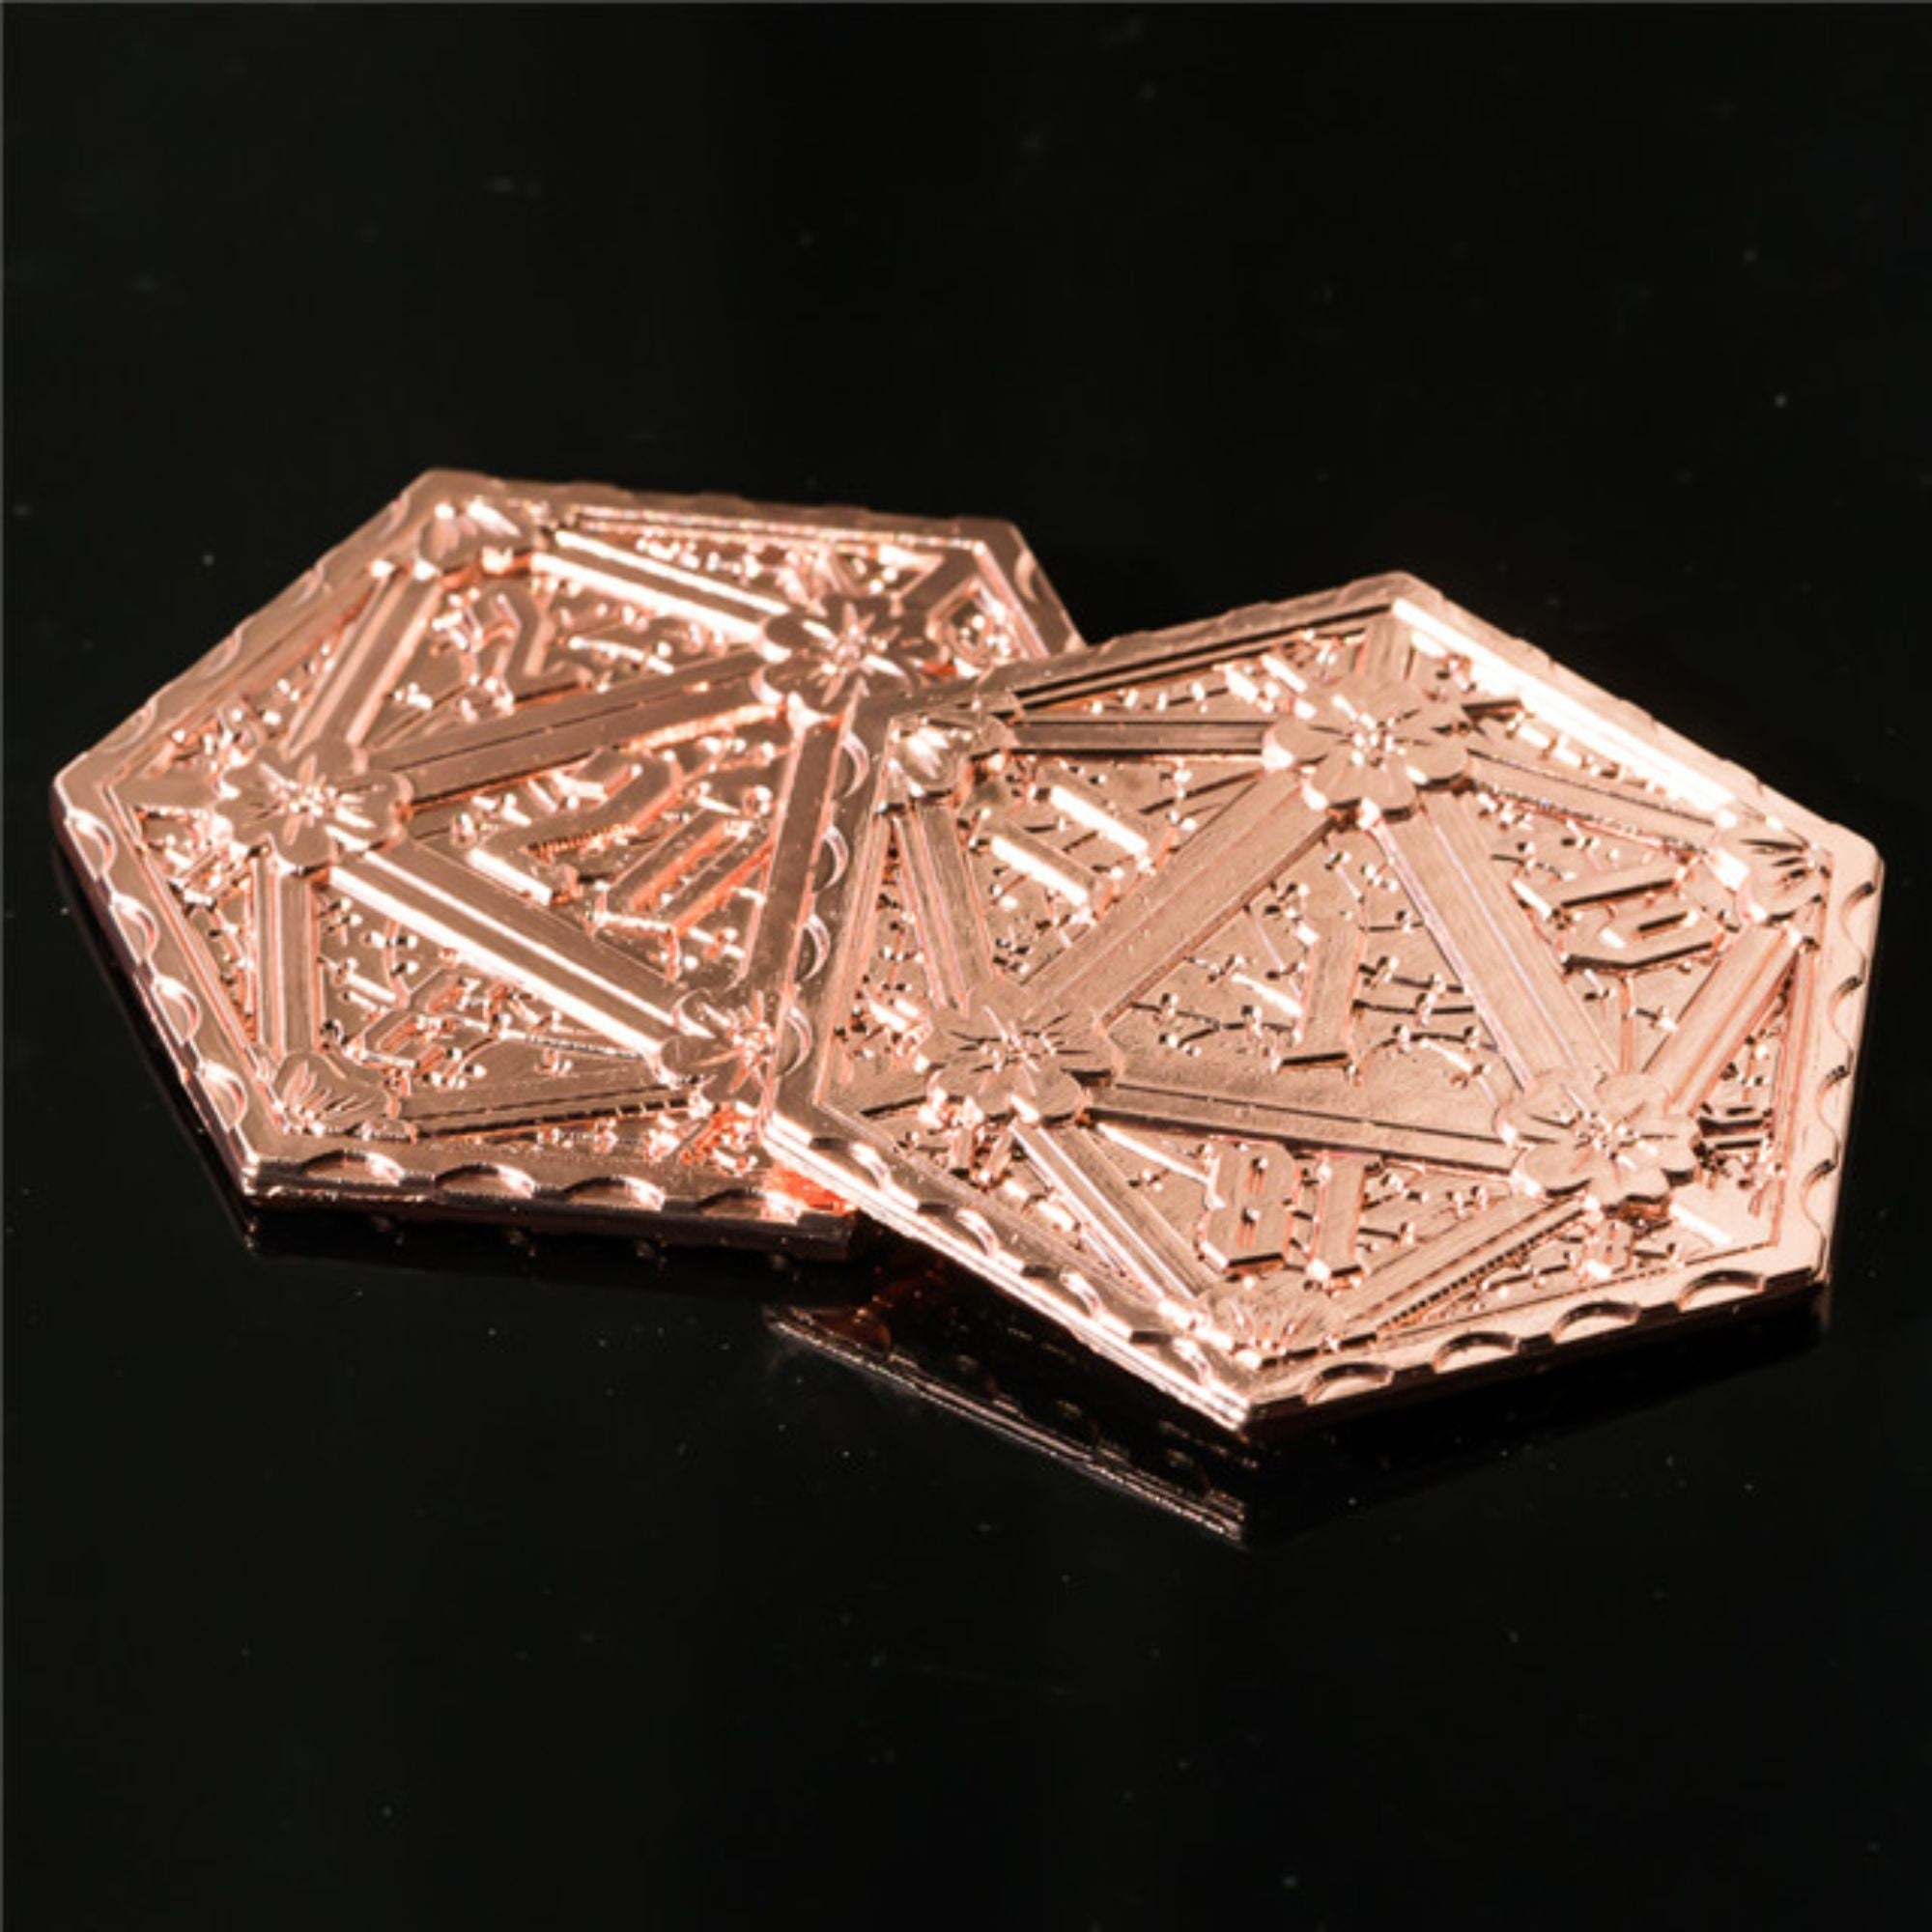 Copper D2 DND/TTRPG Coin - Dicemaniac